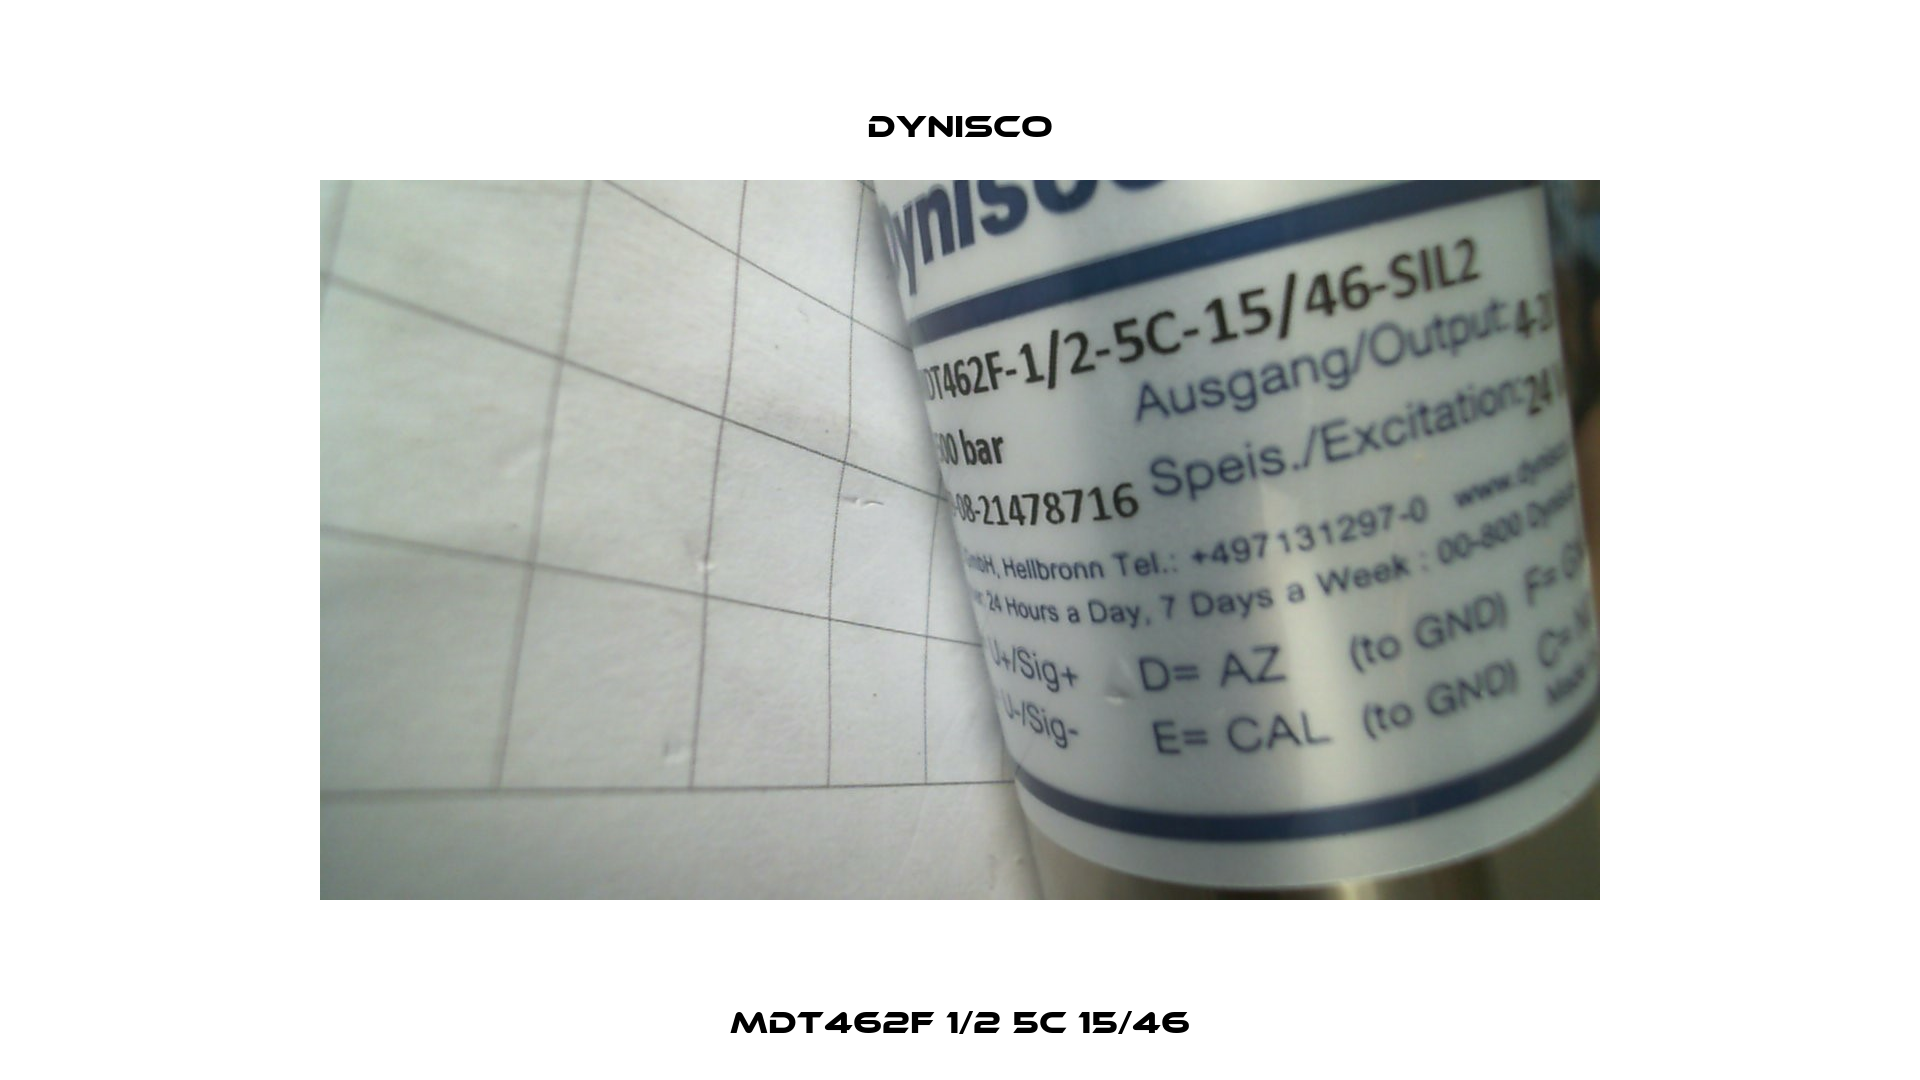 MDT462F 1/2 5C 15/46 Dynisco